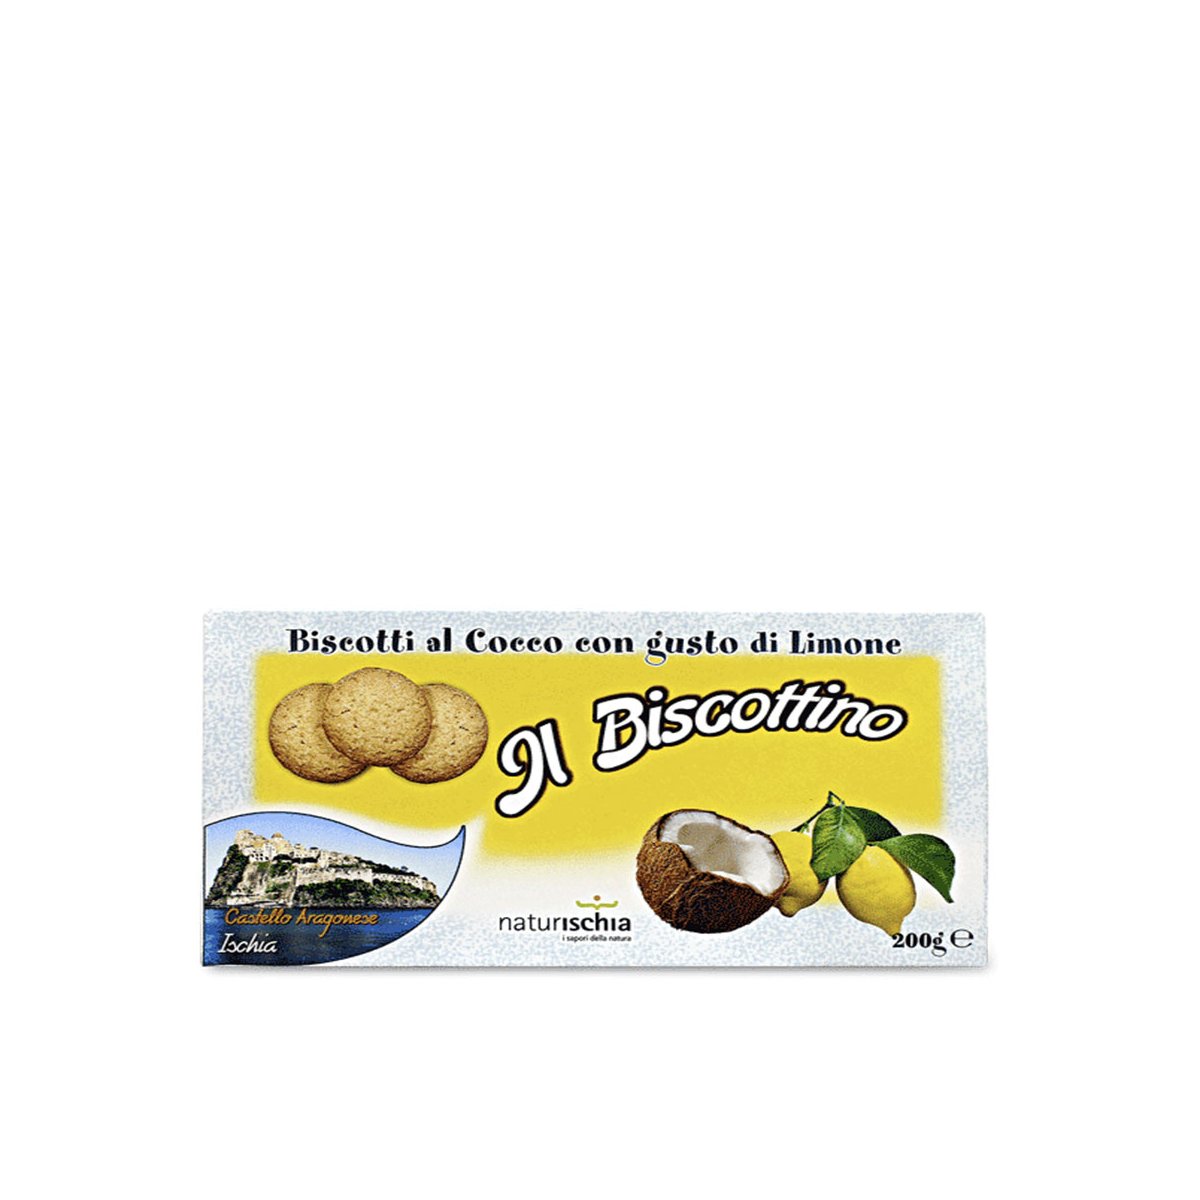 Biscotti al cocco e limone "Il Biscottino" 200 gr